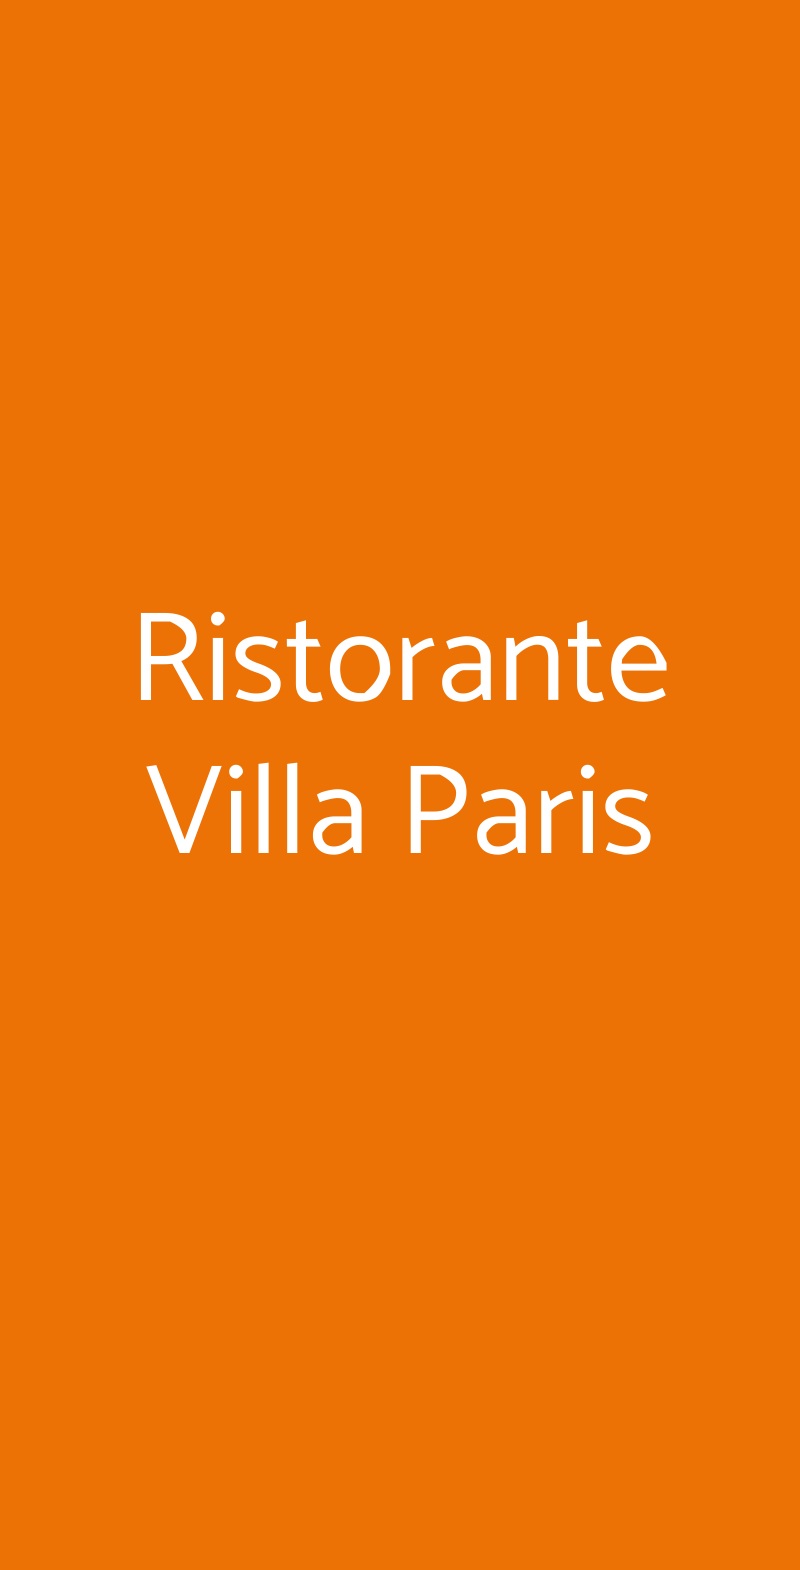 Ristorante Villa Paris Roseto Degli Abruzzi menù 1 pagina